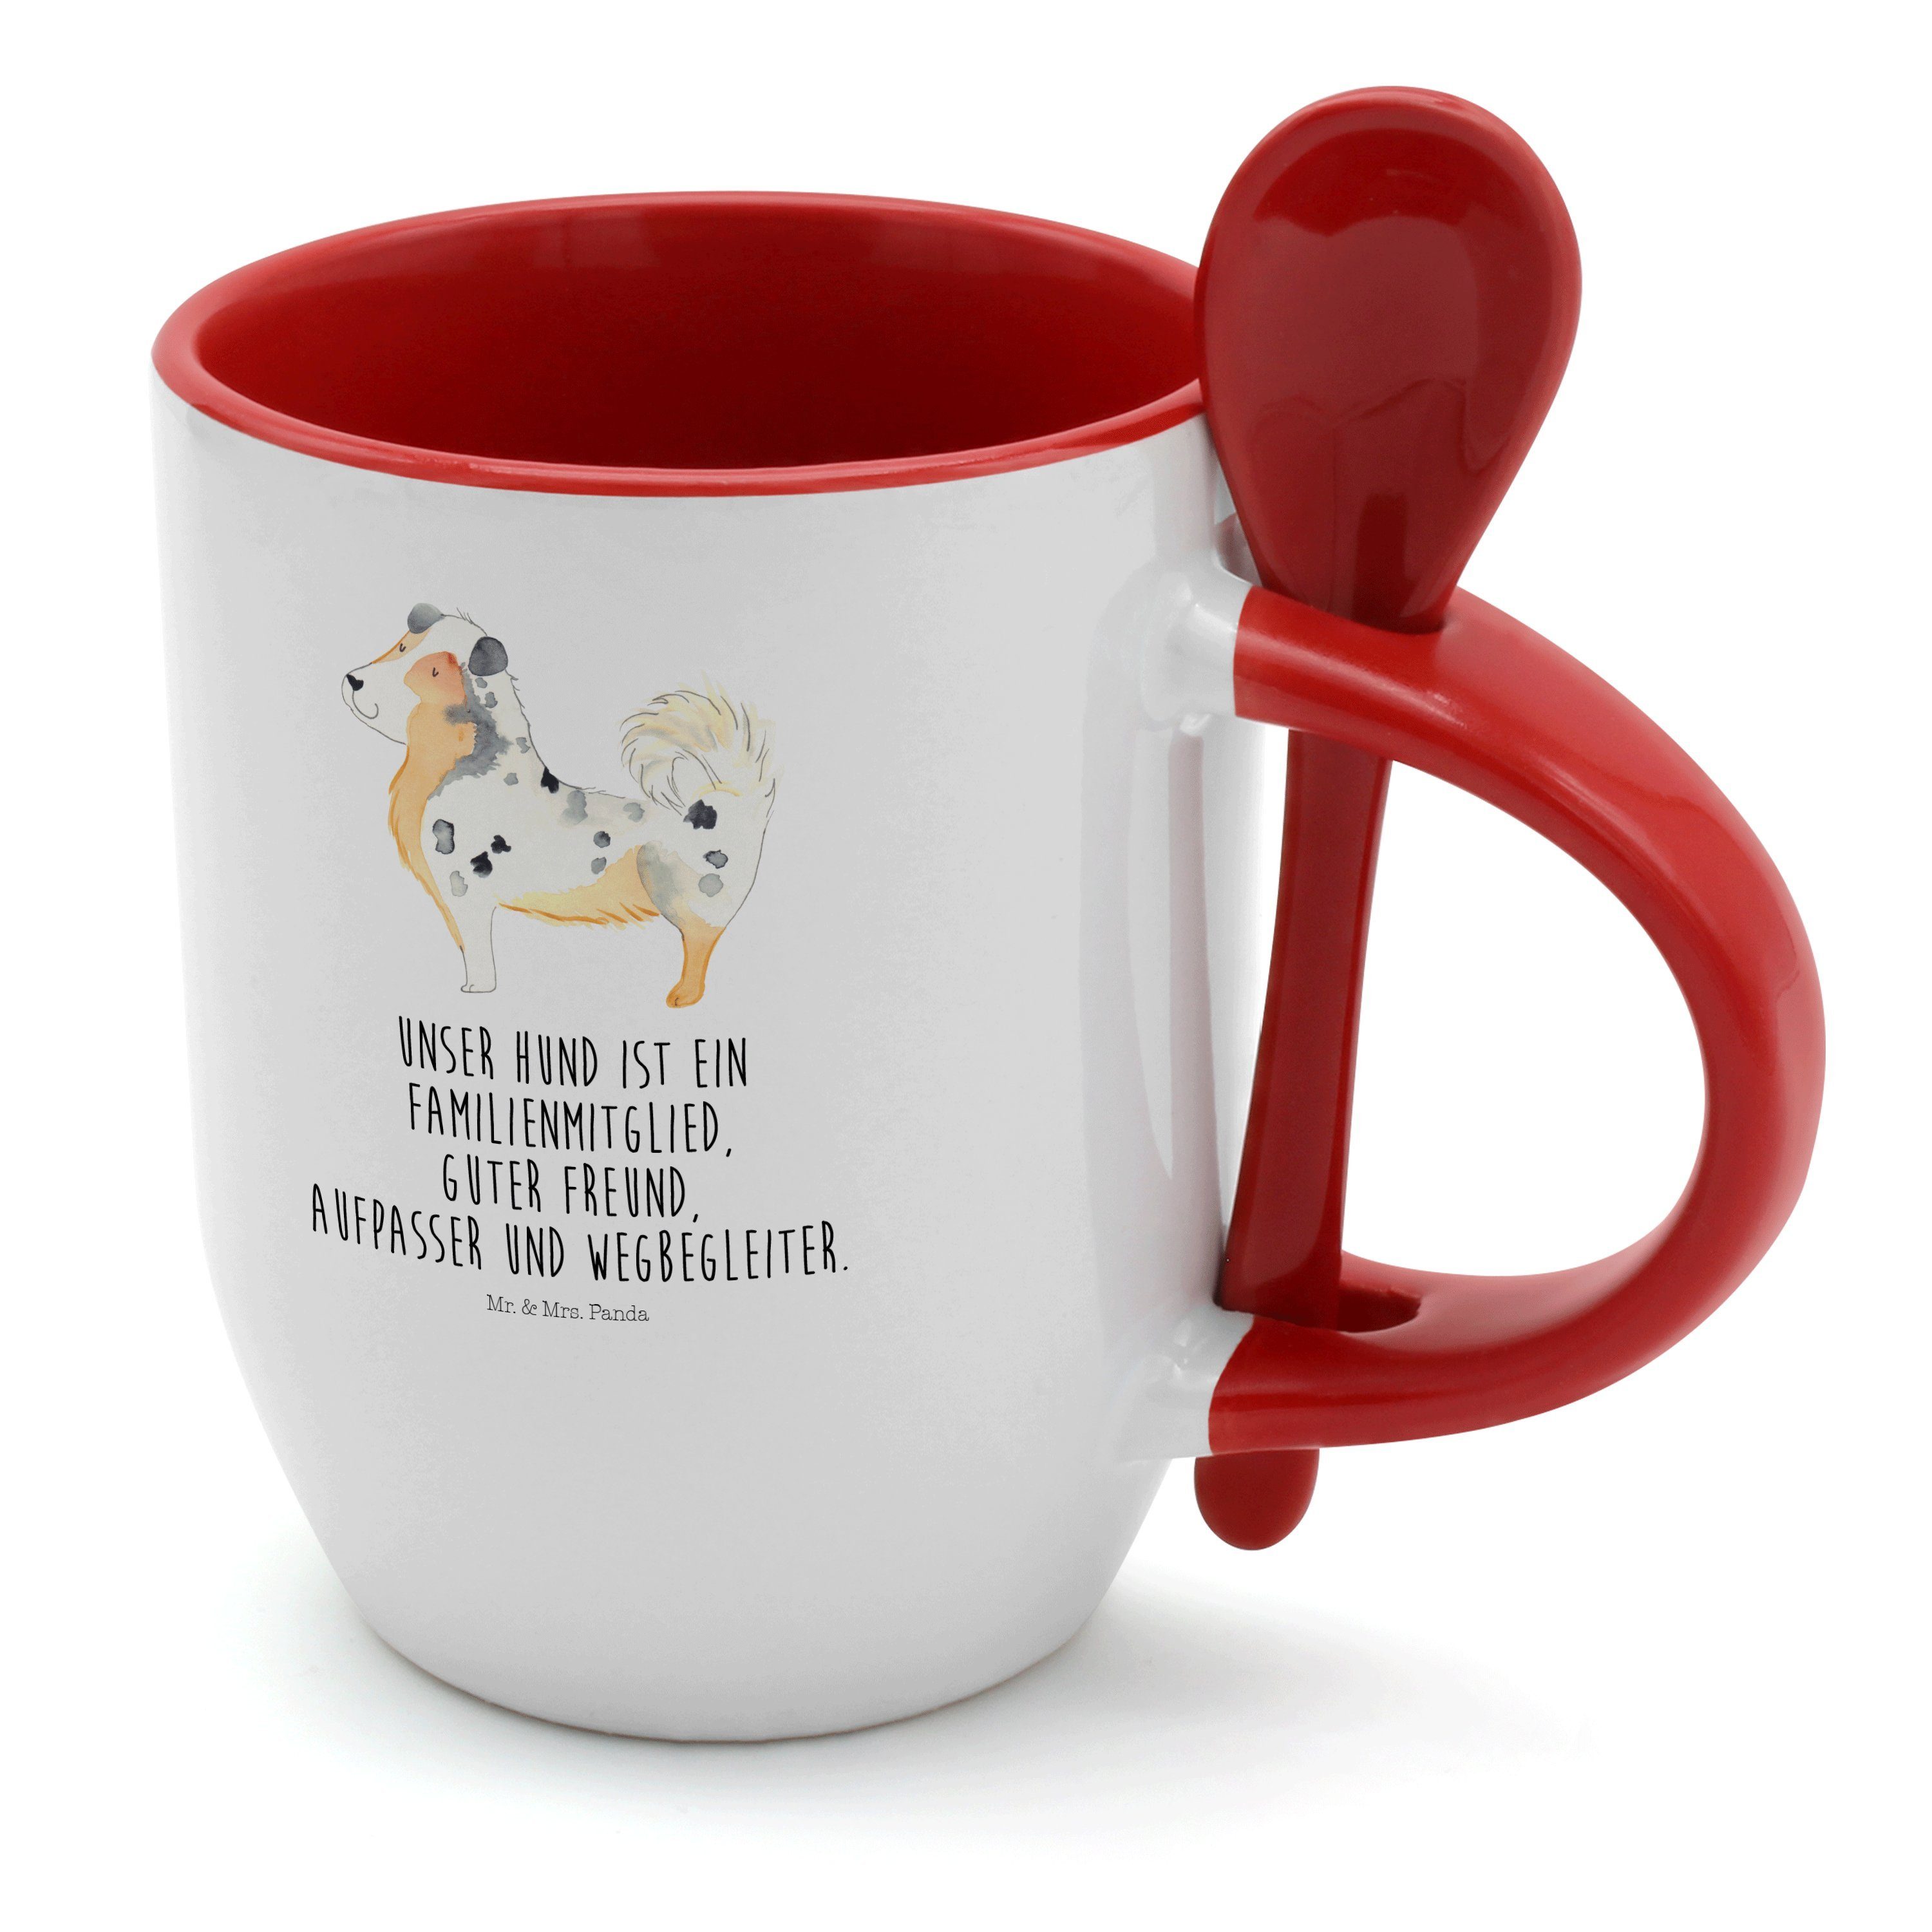 Mr. & Mrs. Panda Australien - Tasse Weiß Keramik Löffel, mit Geschenk, - Shepherd Tasse Kaffeetasse